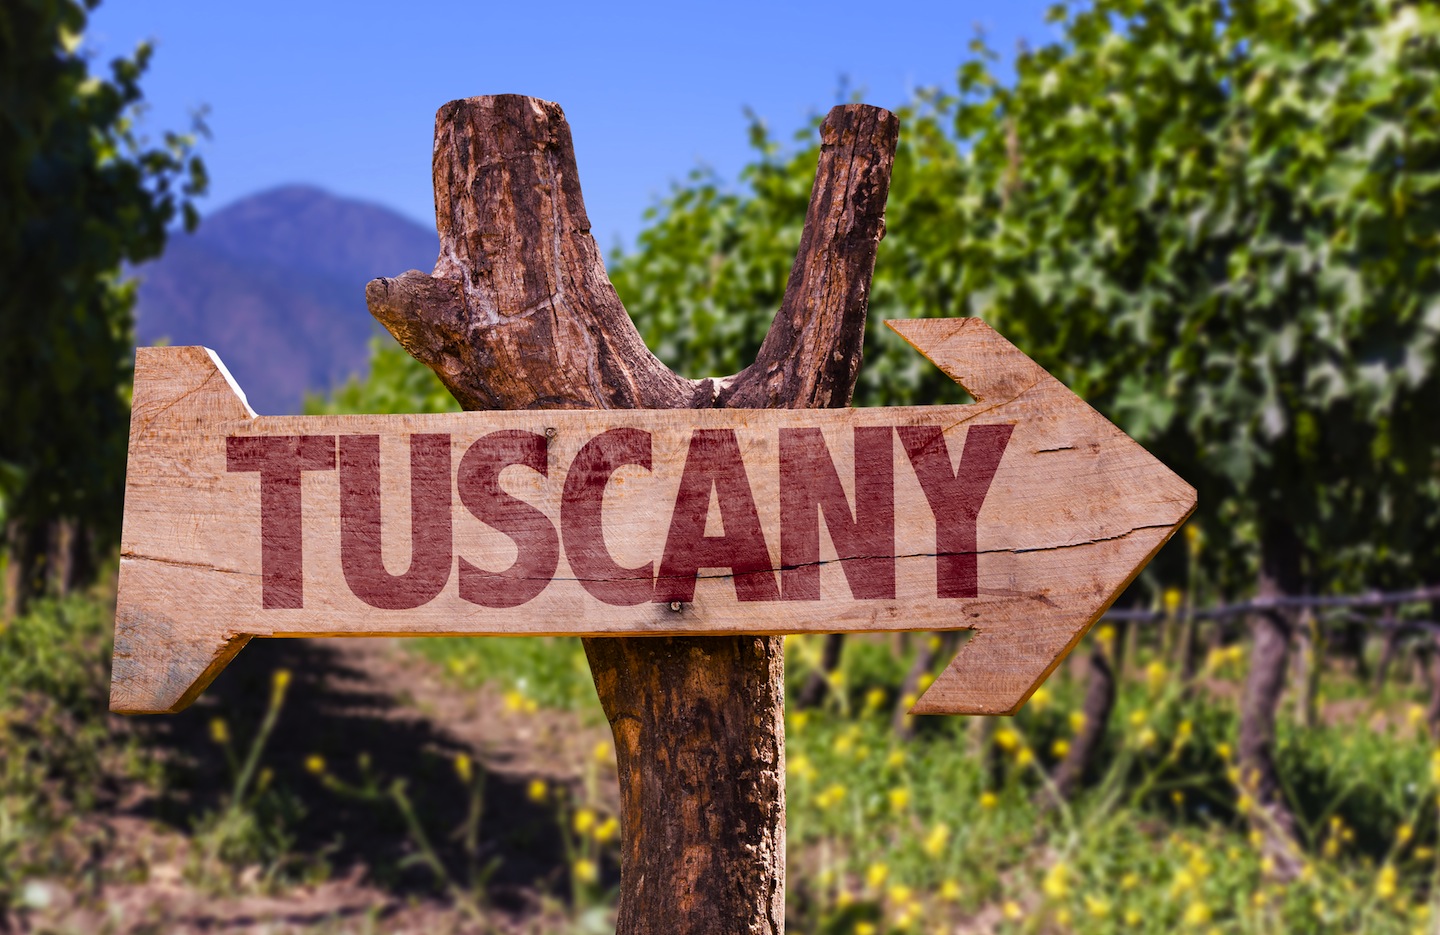 I principali eventi a settembre in Toscana assolutamente da non perdere, tutte manifestazioni che vi faranno assaporare il vero spirito del Made in Tuscany